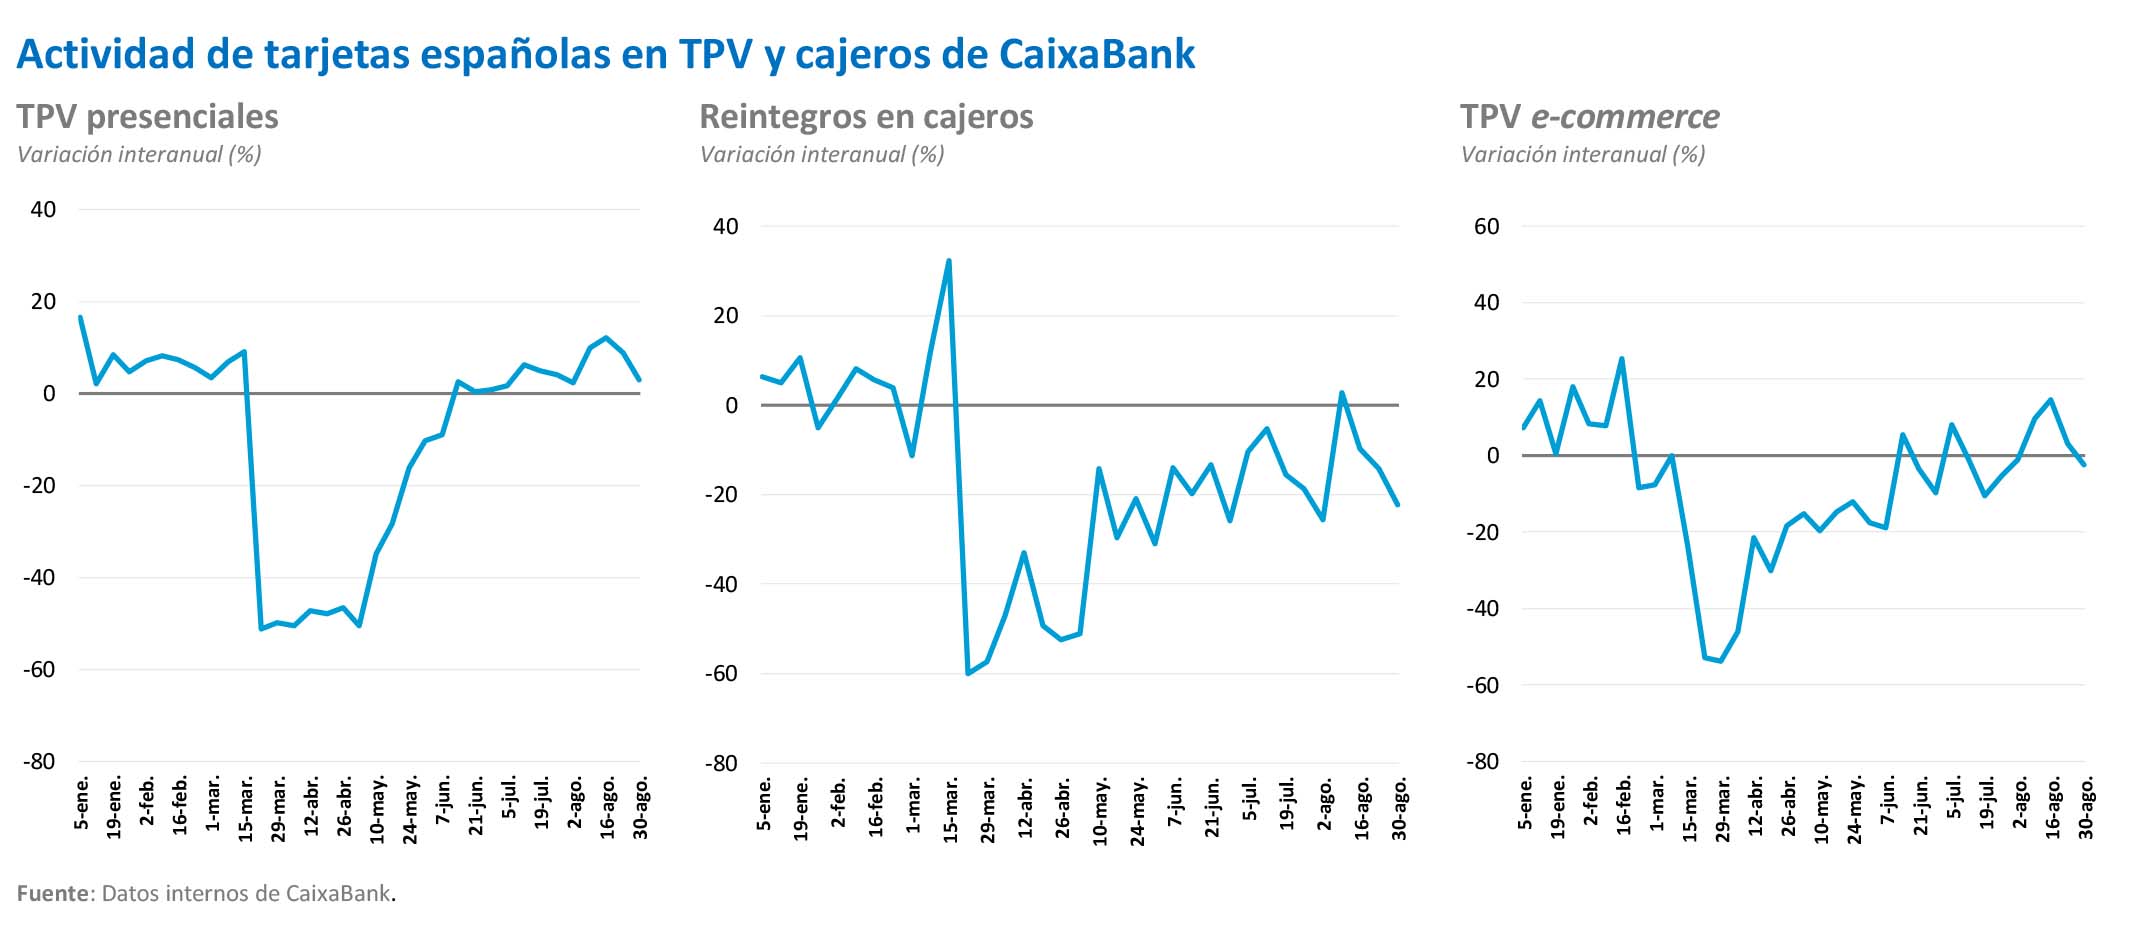 Actividad de tarjetas españolas en TPV y cajeros de CaixaBank